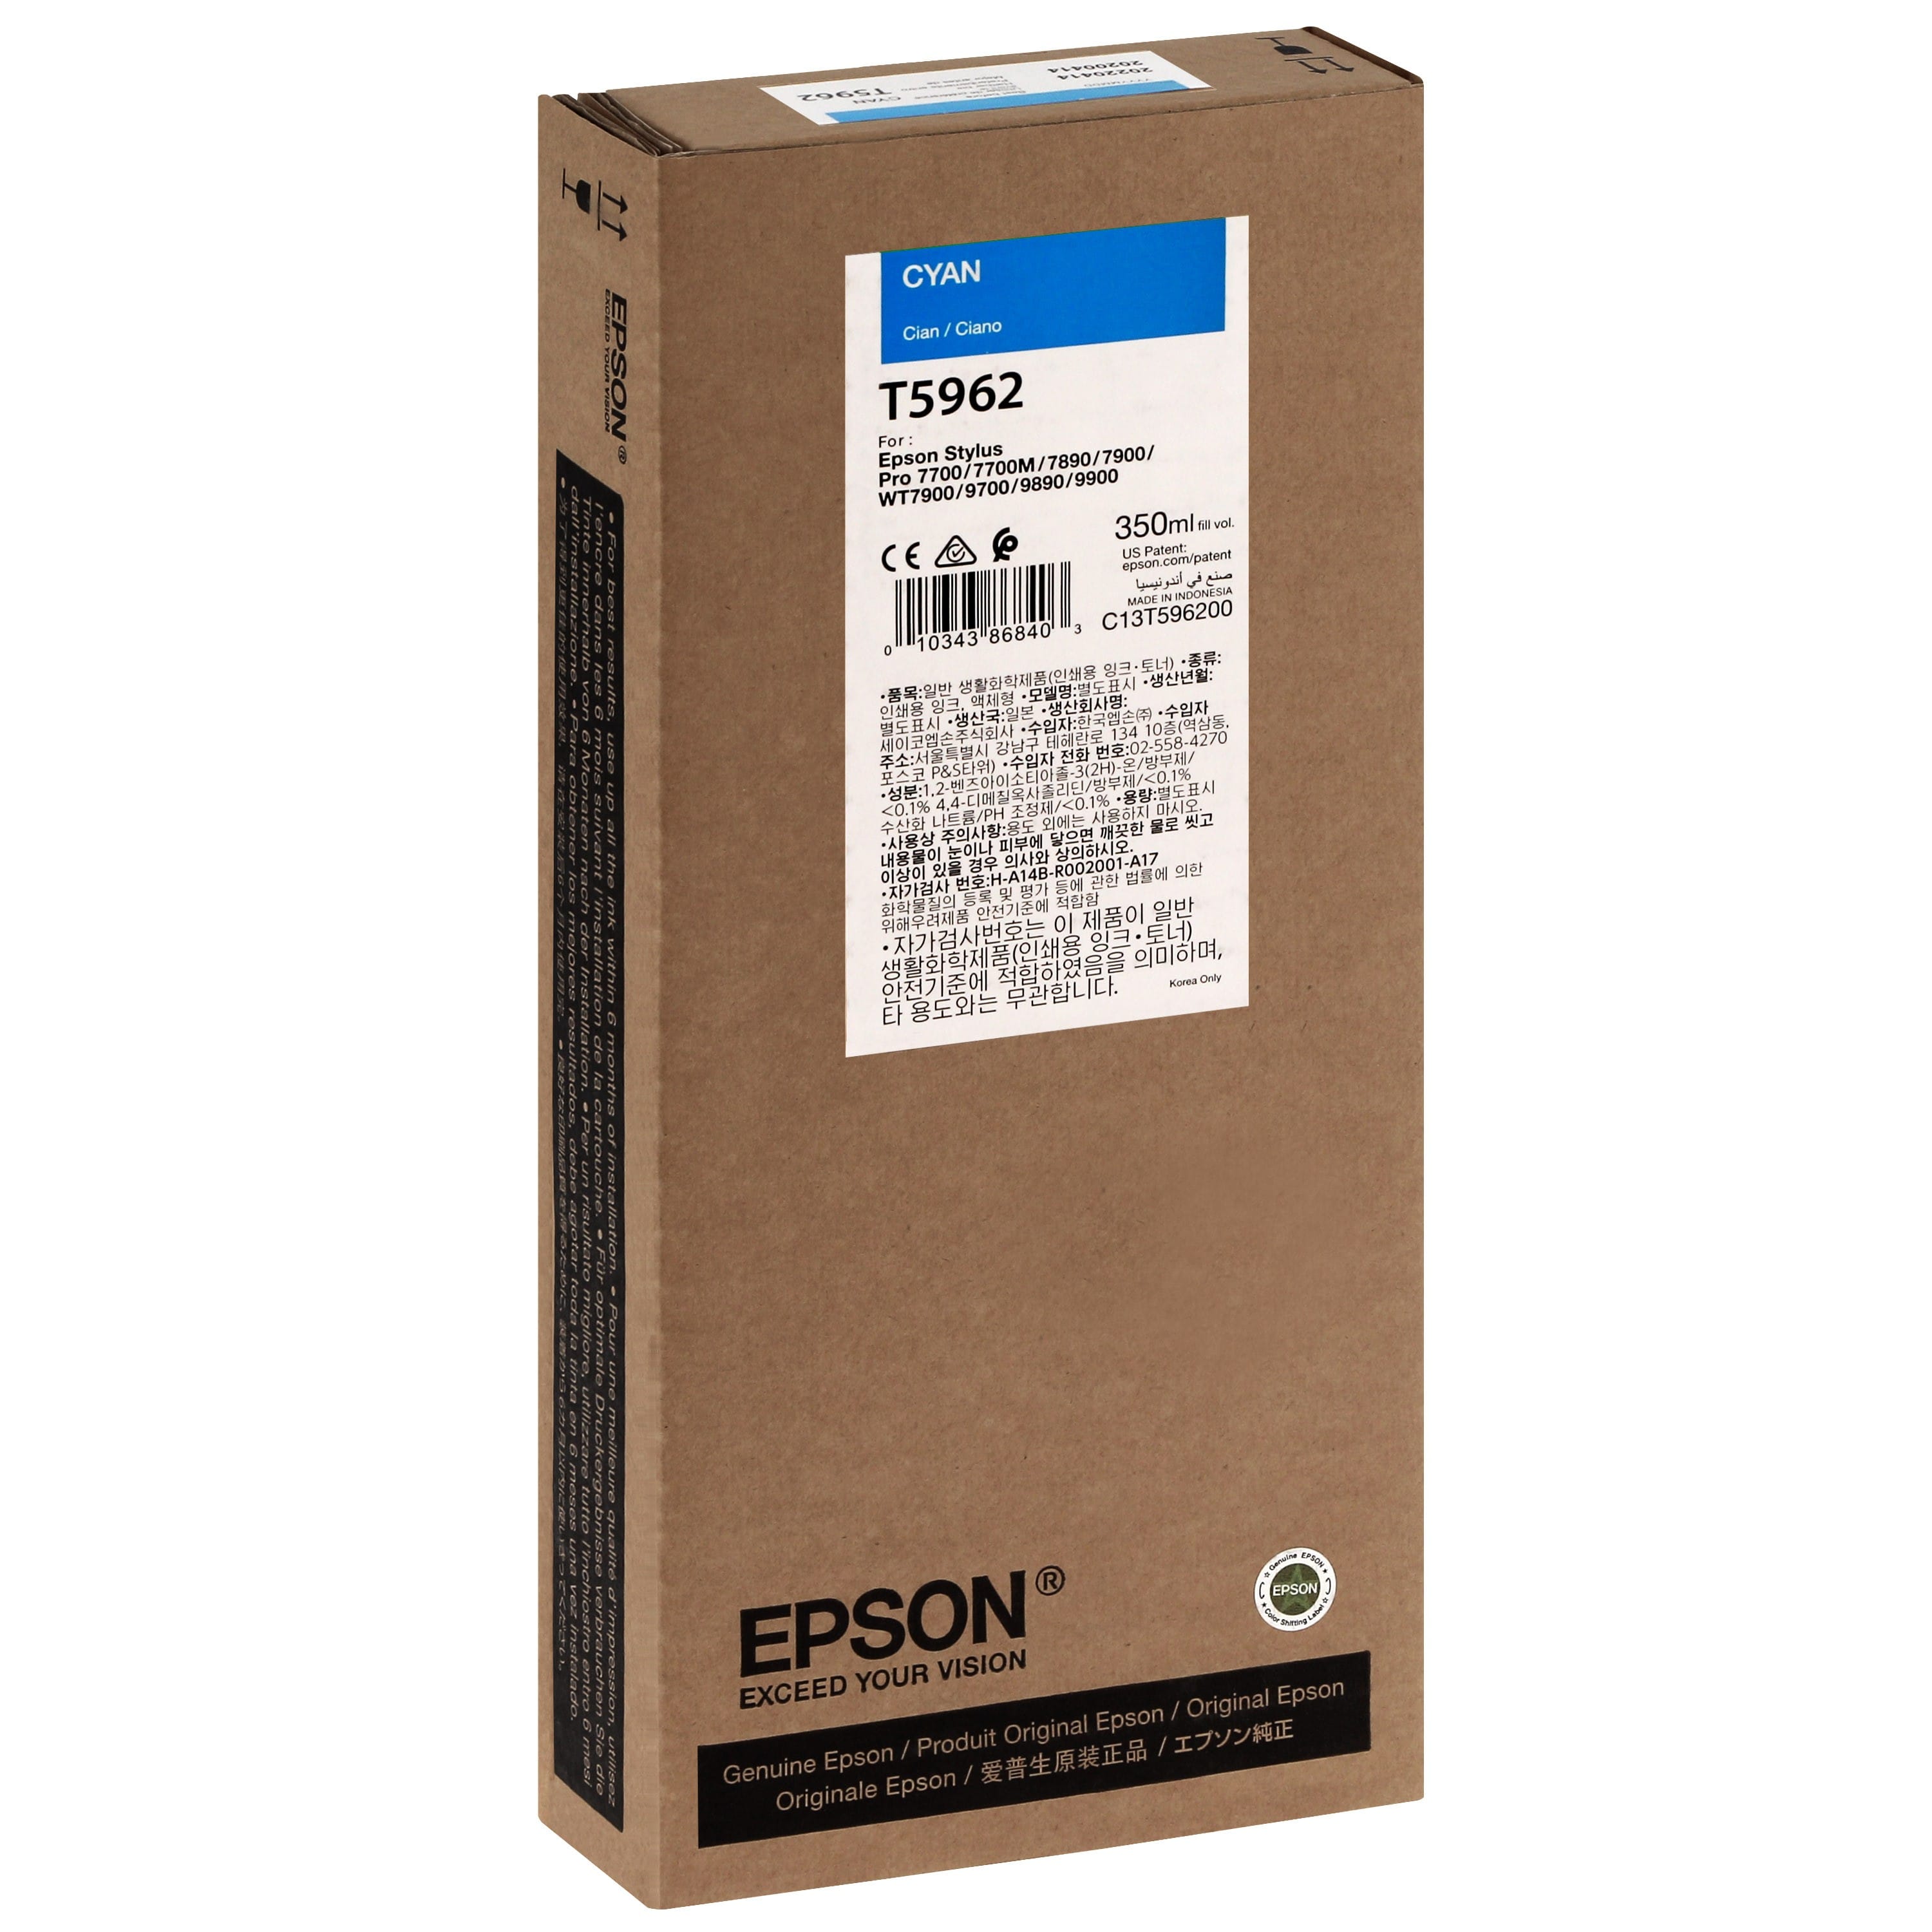 EPSON - Cartouche d'encre traceur T5962 Pour imprimante 7700/9700/7890/9890/7900/9900 Cyan - 350ml